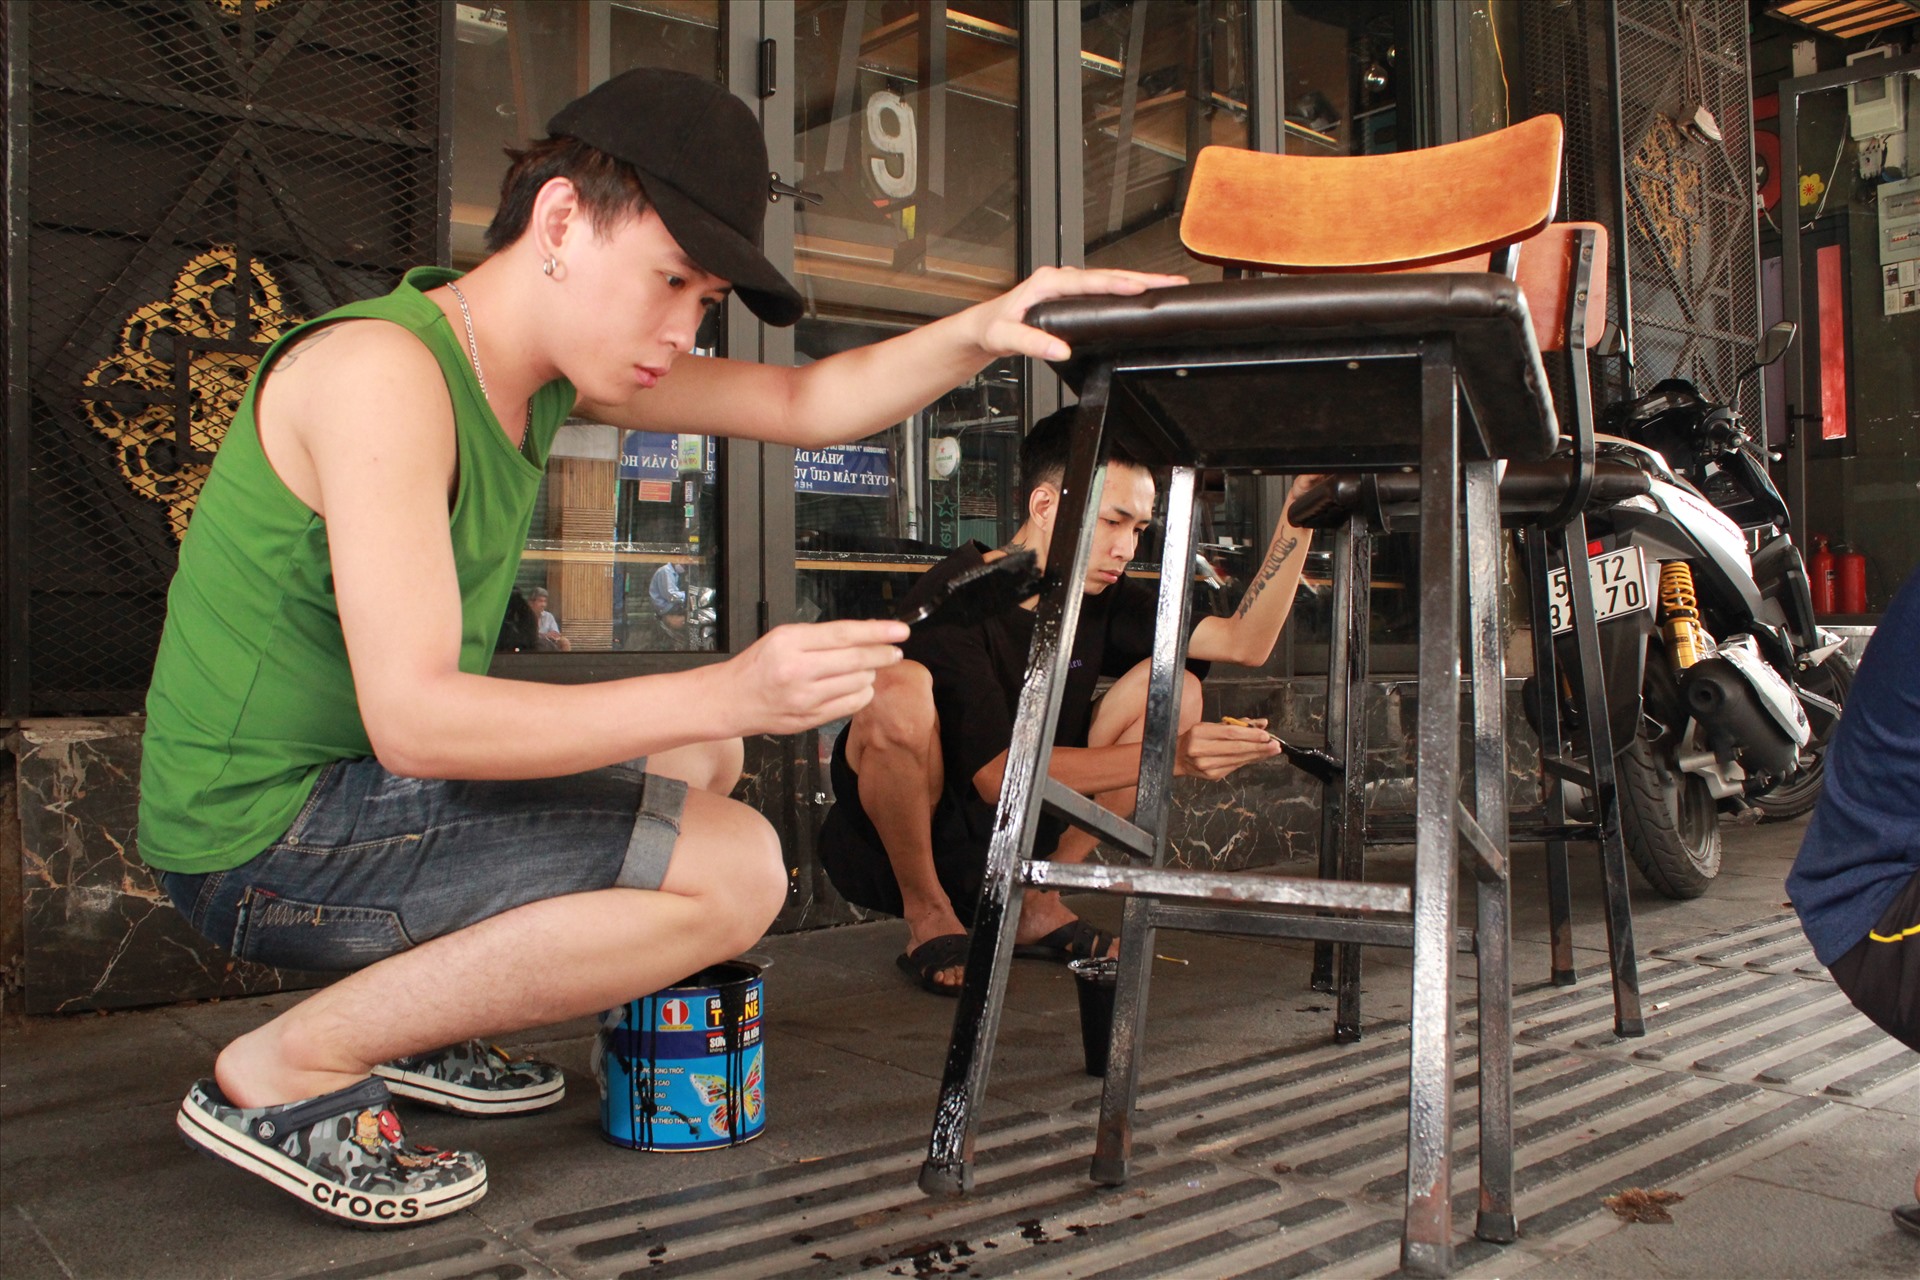 Nhân viên lau chùi và sắp xếp lại bàn ghế tại một nhà hàng trên đường Phan Đăng Lưu (Q.Phú Nhuận, TP.HCM) - Ảnh: NGỌC PHƯỢNG